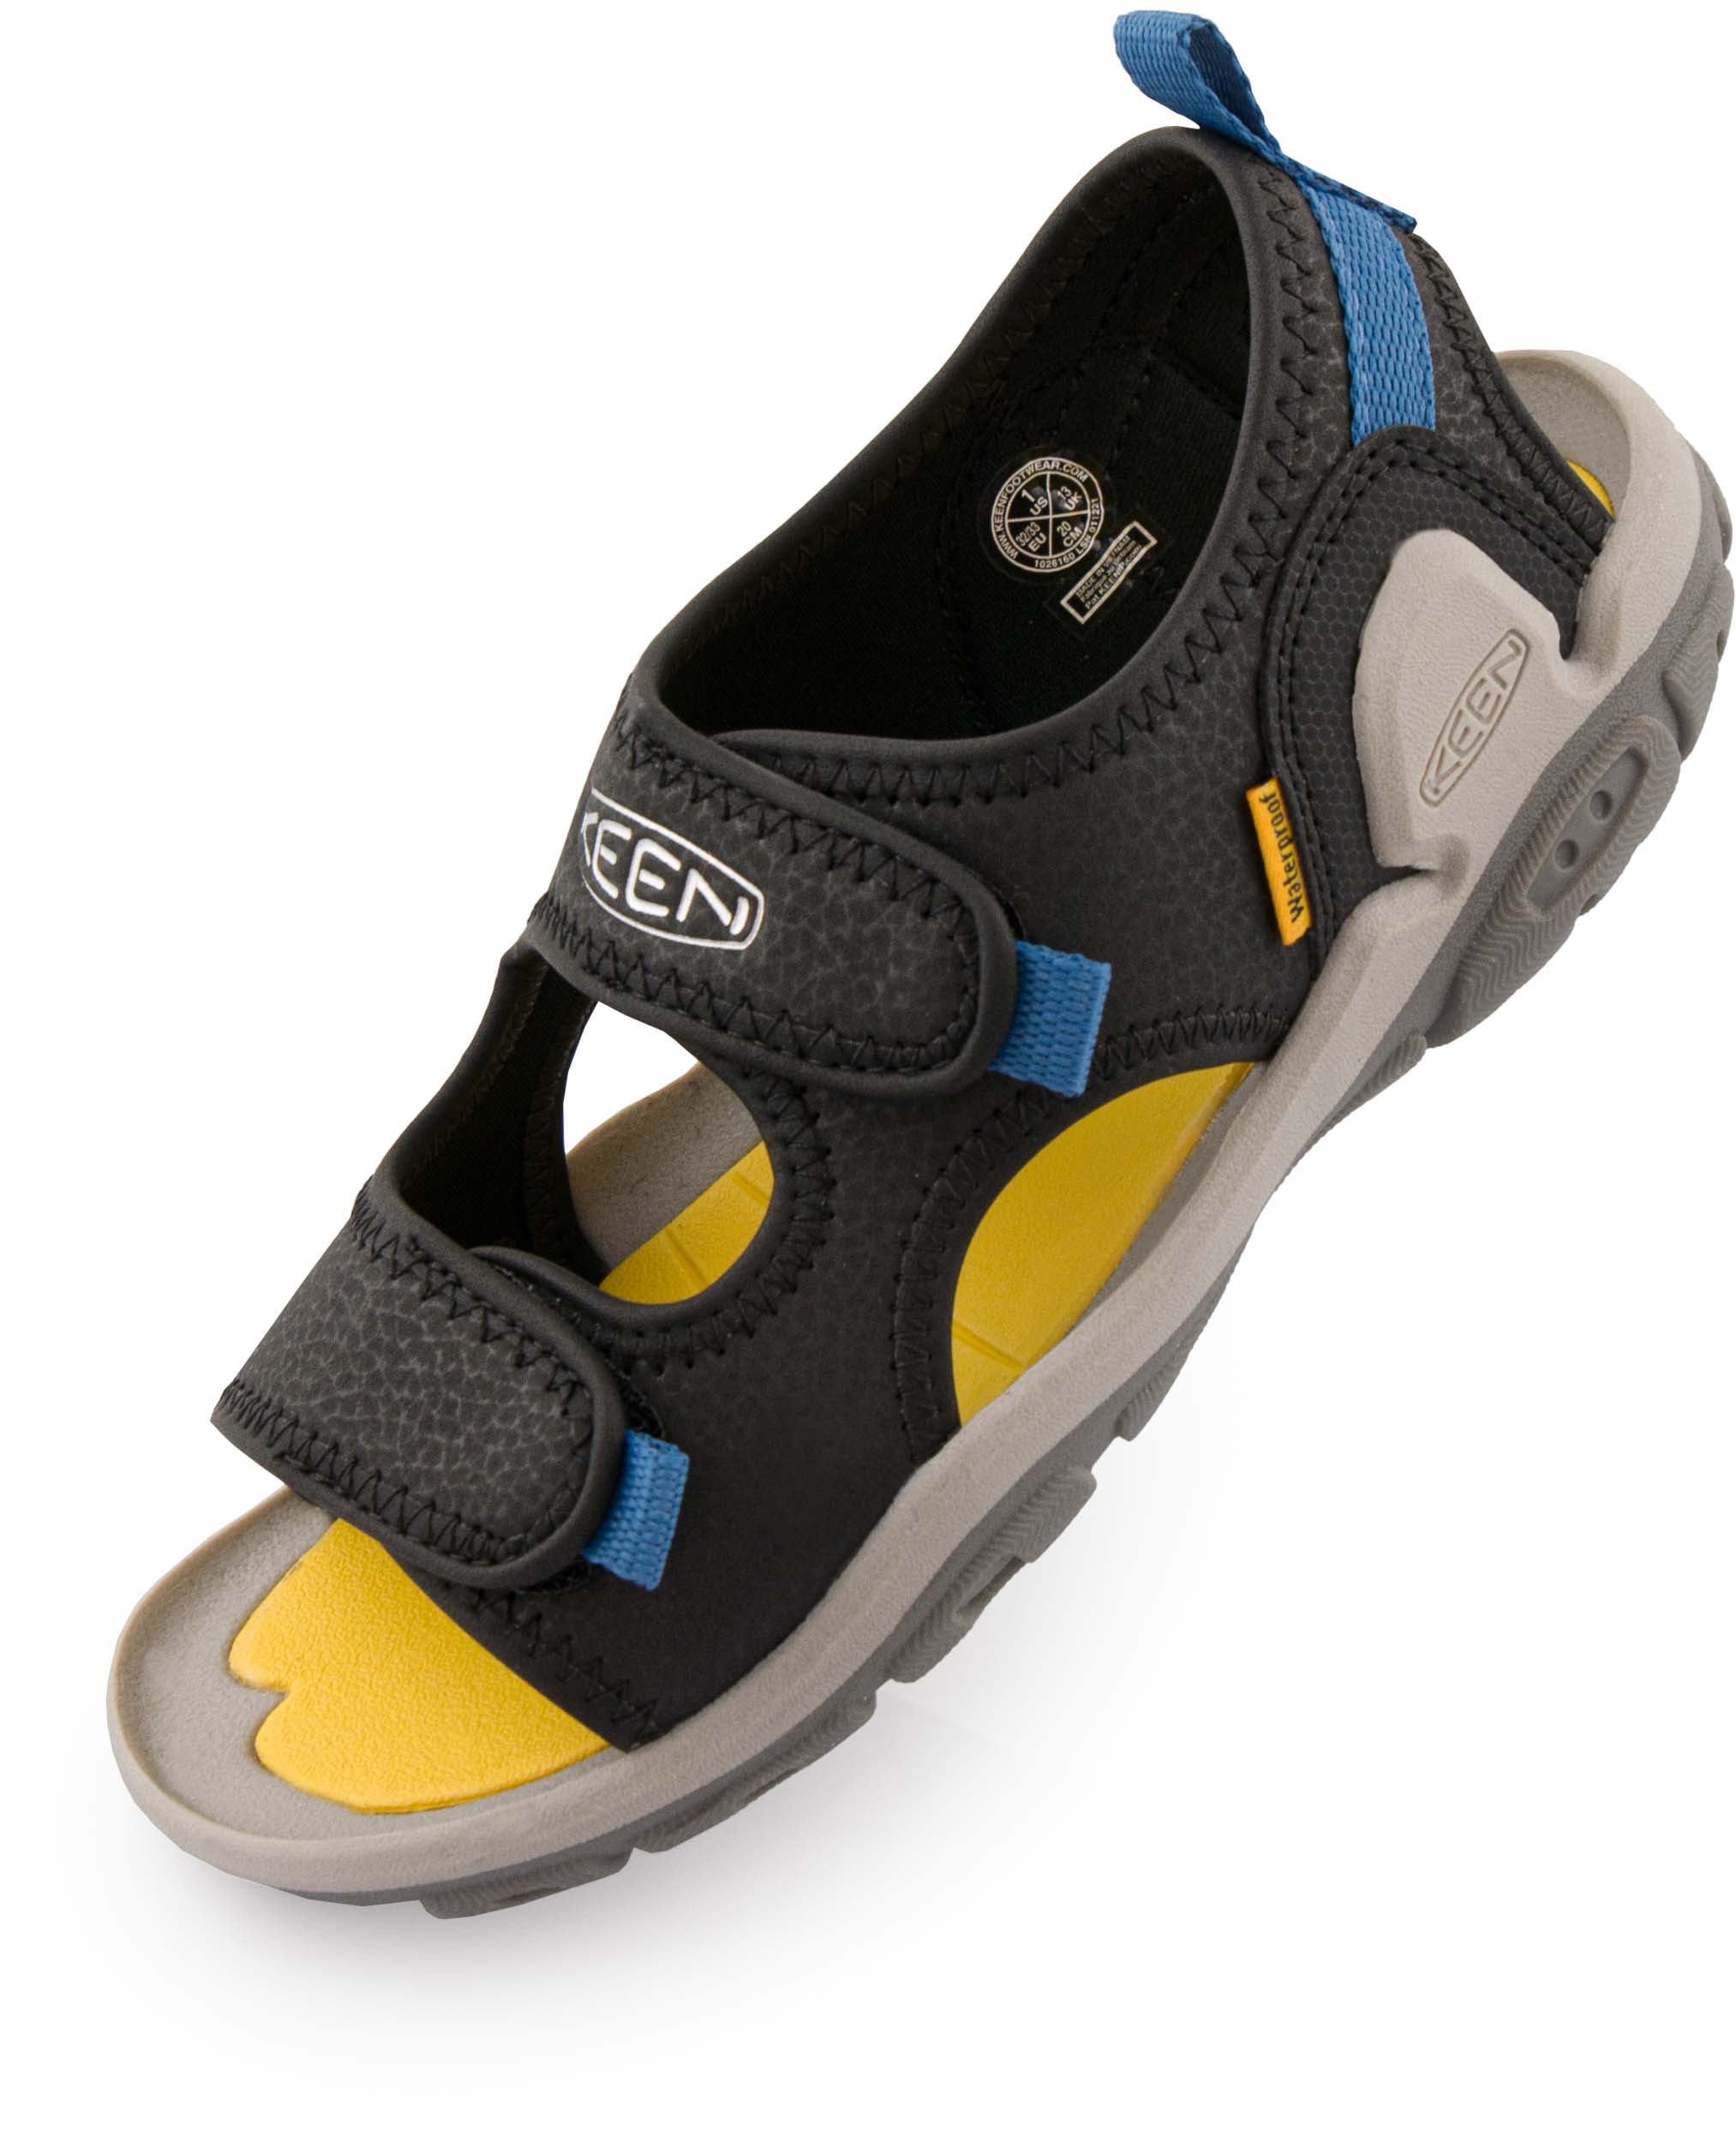 Dětské sandály Keen Jr Knotch Creek OT Black-Yellow|32-33